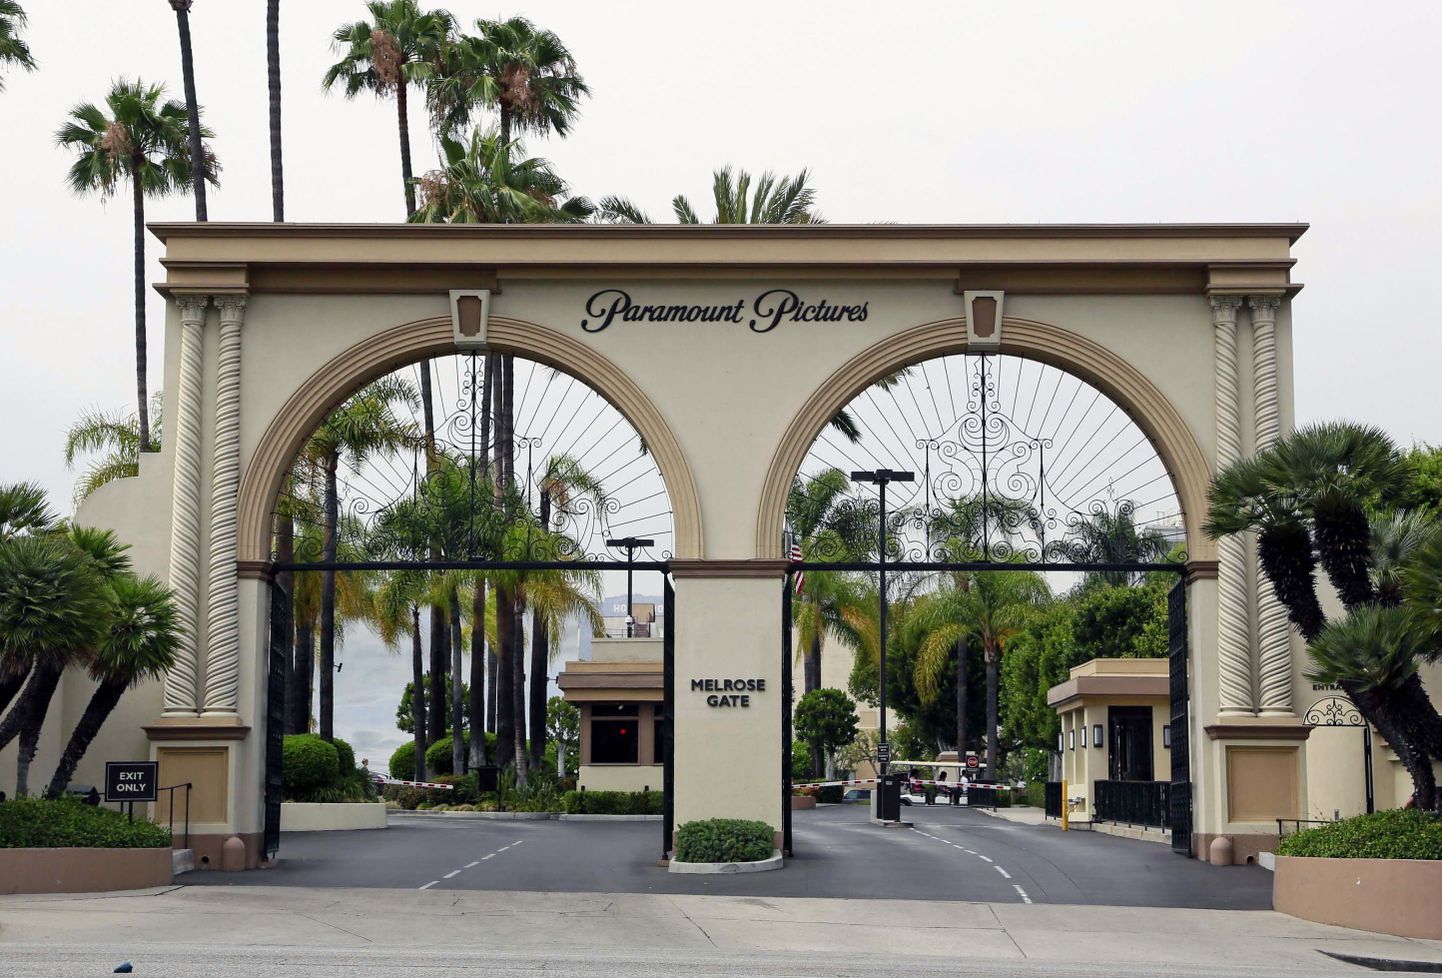 Paramount Studios on üks neist, kelle väravaid euroliit on asunud kõigutama